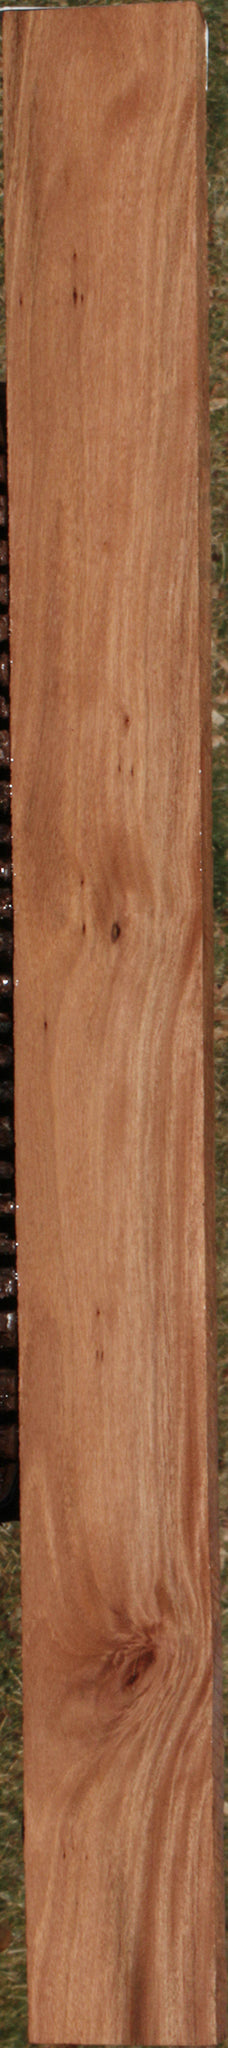 Brush Box Lumber